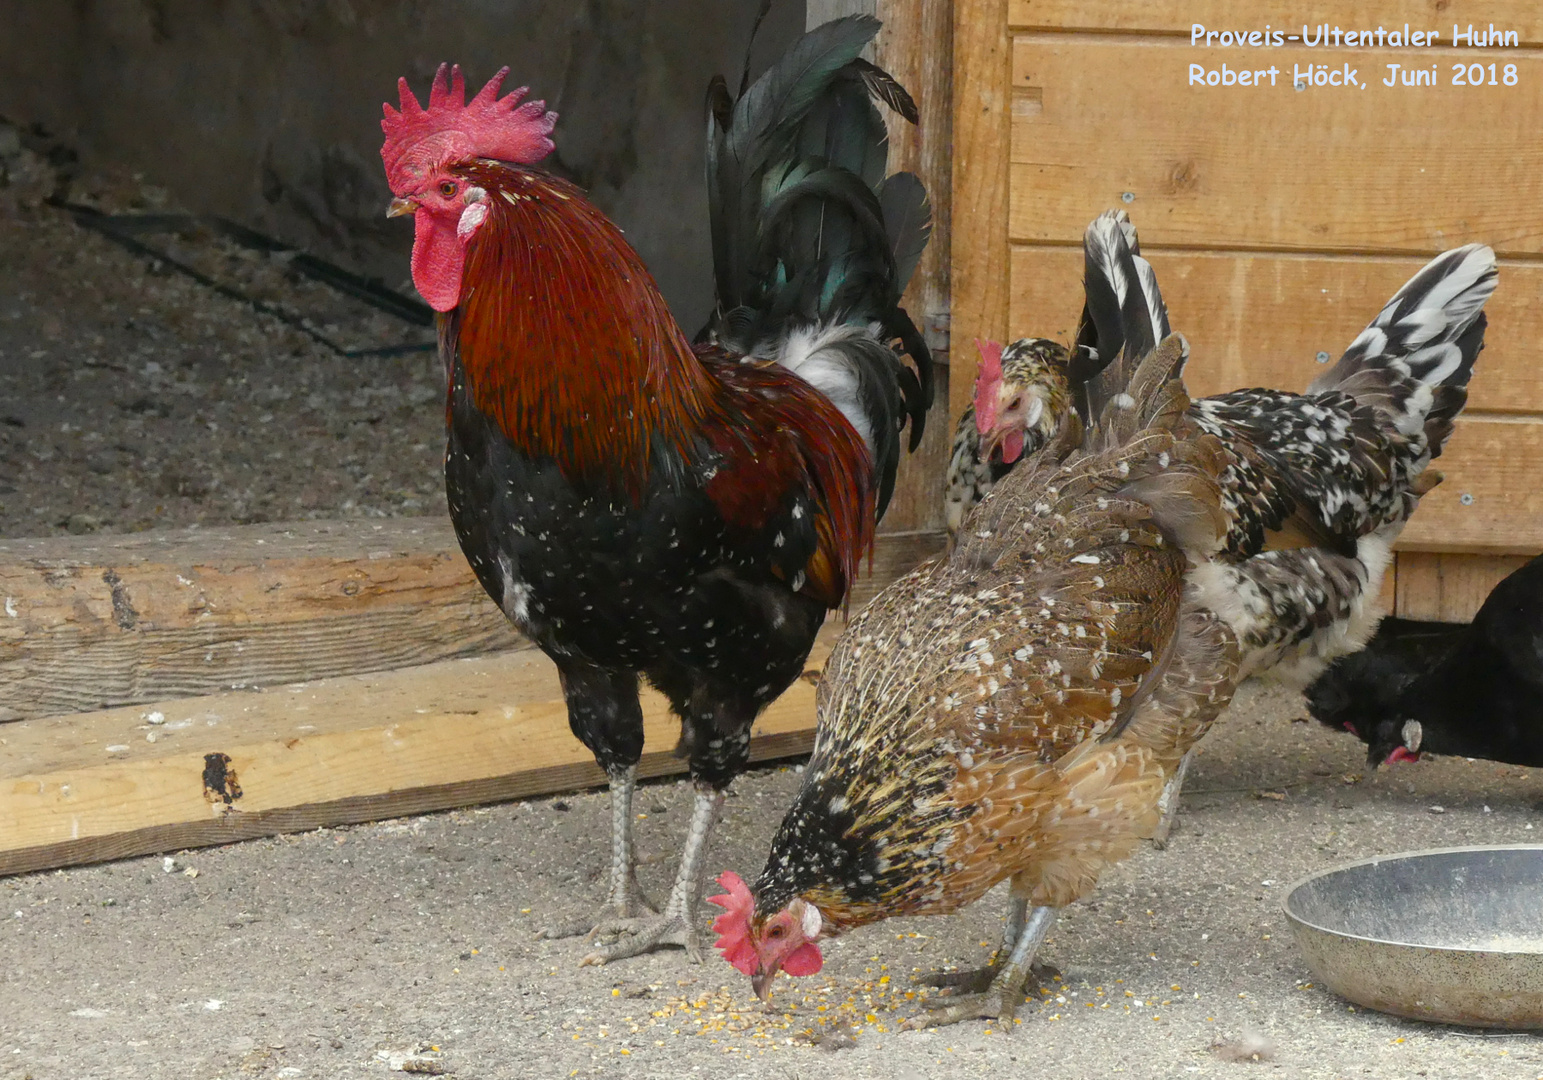 Proveis-Ultentaler Hühner sind auch bekannt als Mühlbacher Huhn